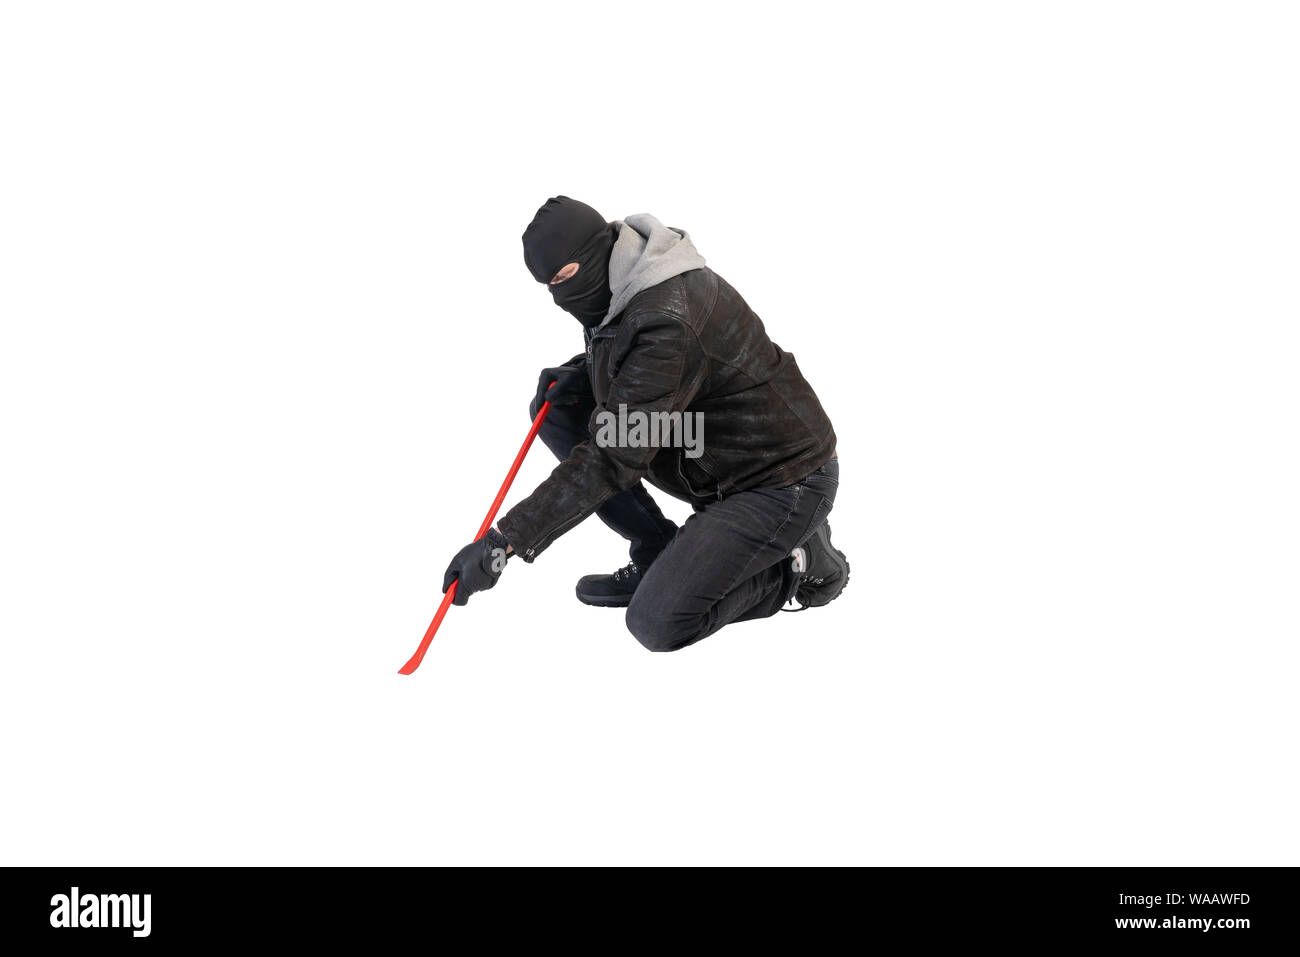 Einbrecher Knie mit der Brechstange und Maske vor einem weißen Hintergrund Stockfoto